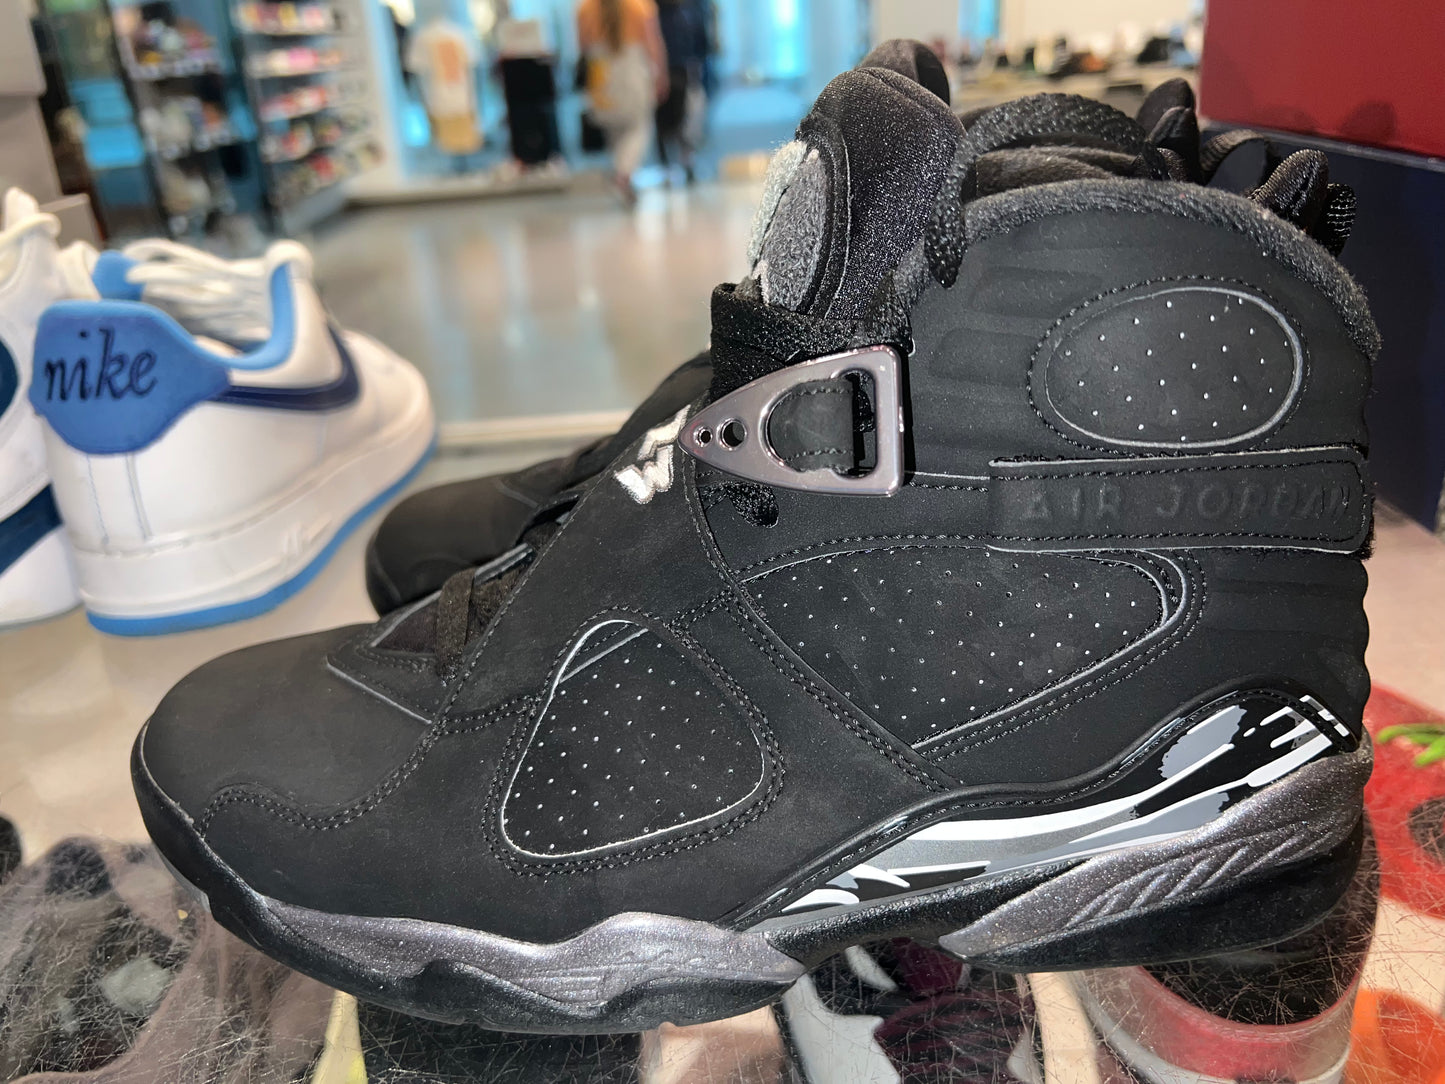 Size 7.5 Air Jordan 8 “Chrome” (Mall)